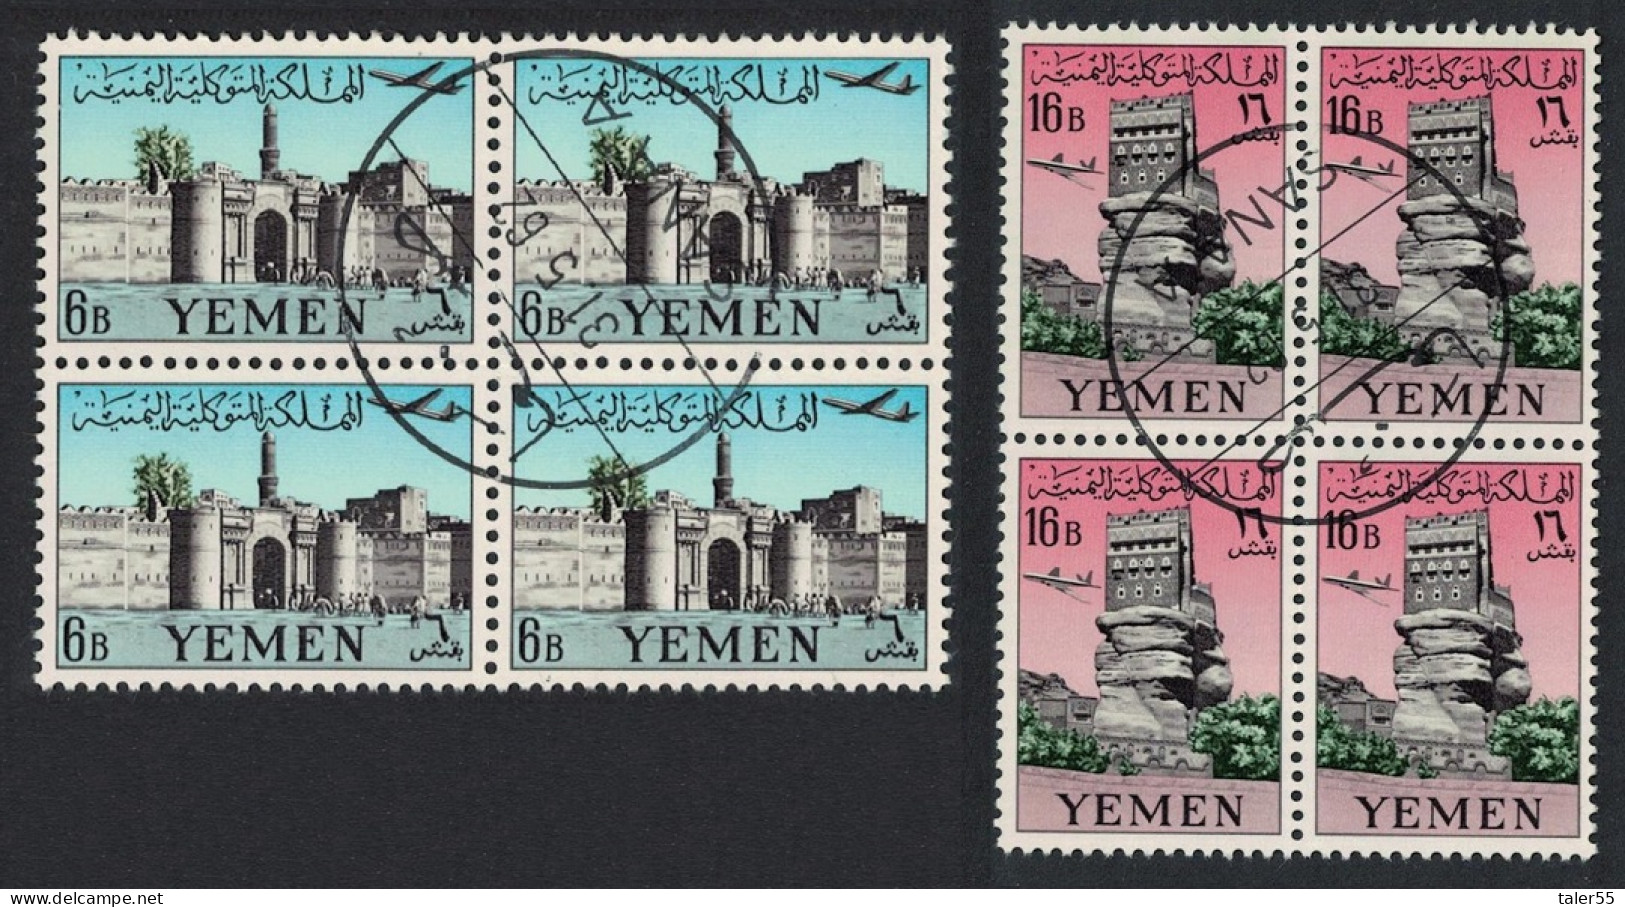 Yemen Palace Of The Rock Airmail 2v Blocks Of 4 1961 Canc SG#154-155 - Yemen